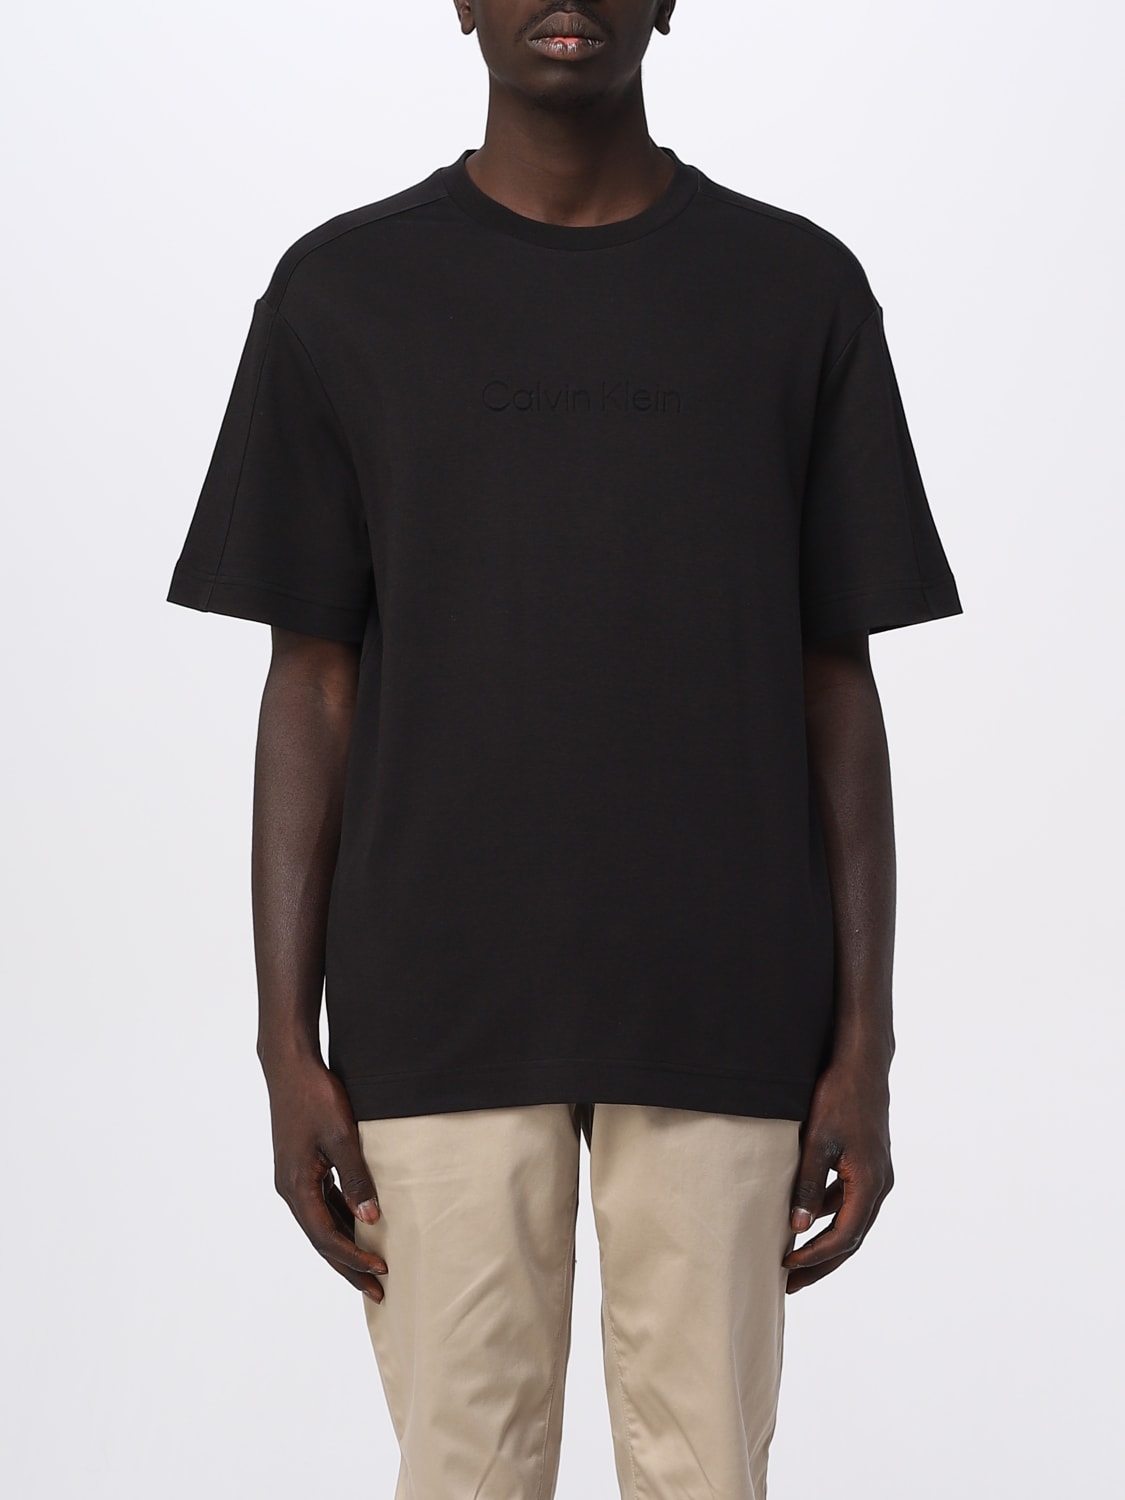 Calvin Klein T-shirt in Black for Men